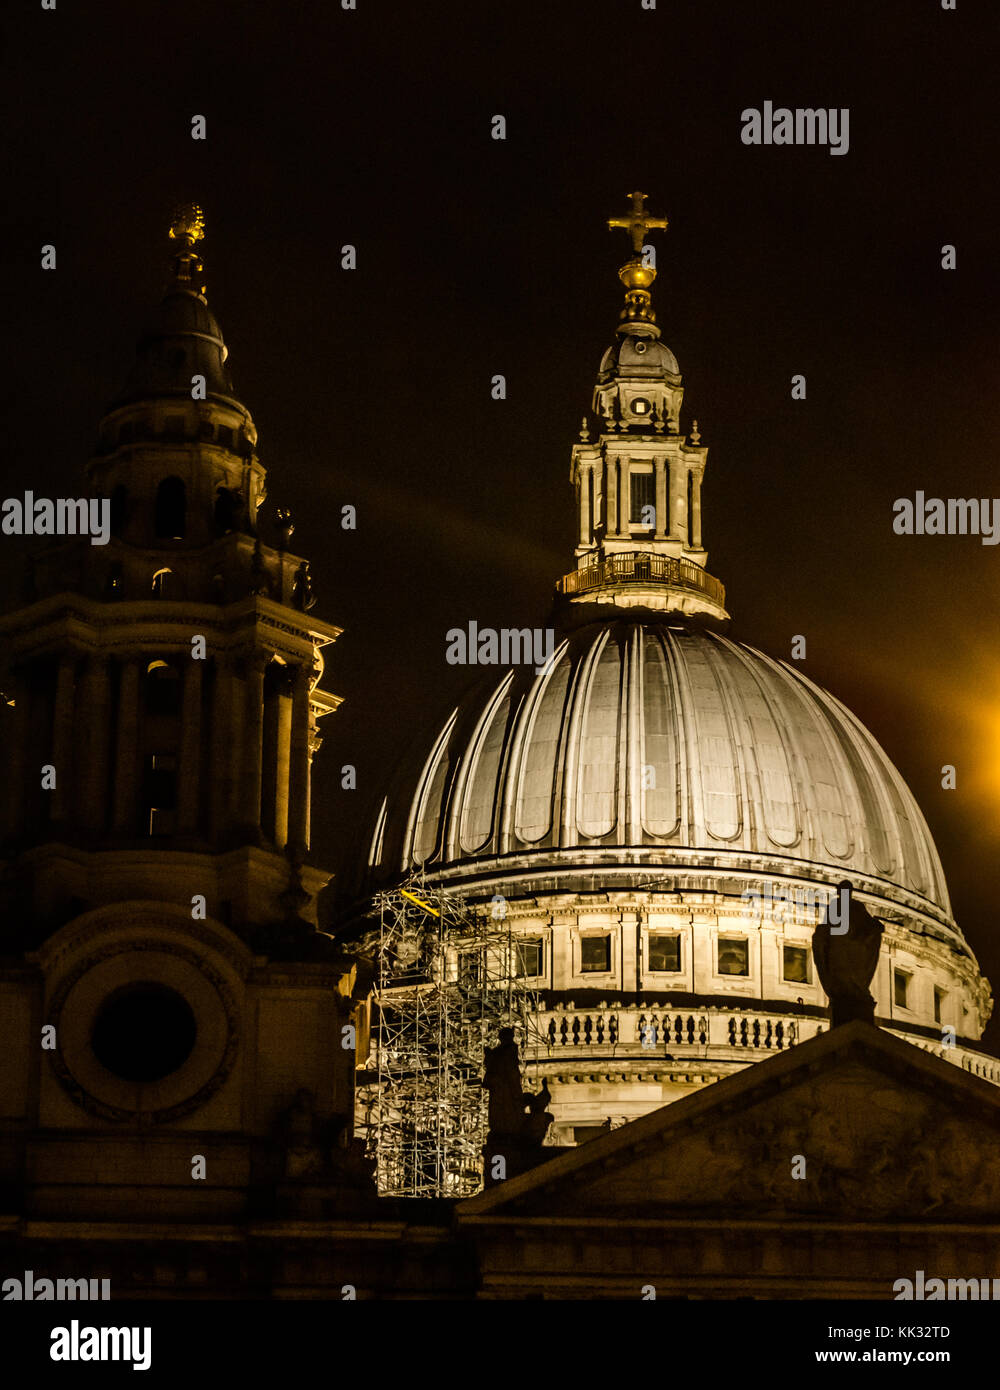 Blick auf die Domkuppel von St Pauls, nachts beleuchtet mit Schatten von Turmspitzen, London, England, Großbritannien Stockfoto